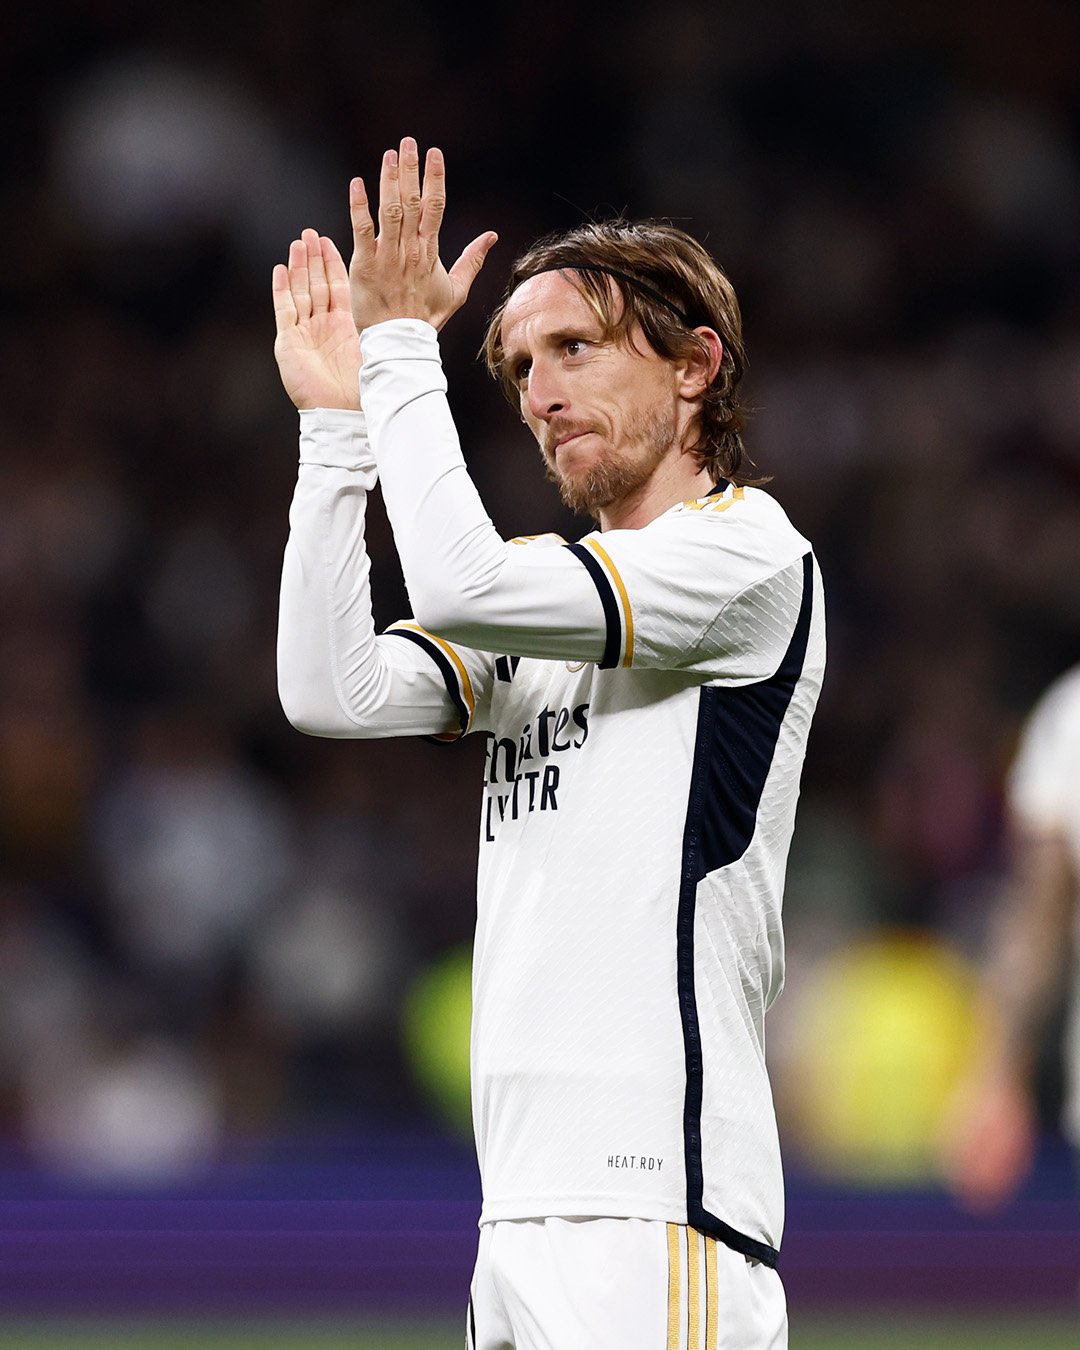 Real Gómez on X: "Honor a don Luka Modric, que ha entrado en el peor  momento y ha logrado revertir la tendencia del partido.  https://t.co/AMaiIzcwX5" / X